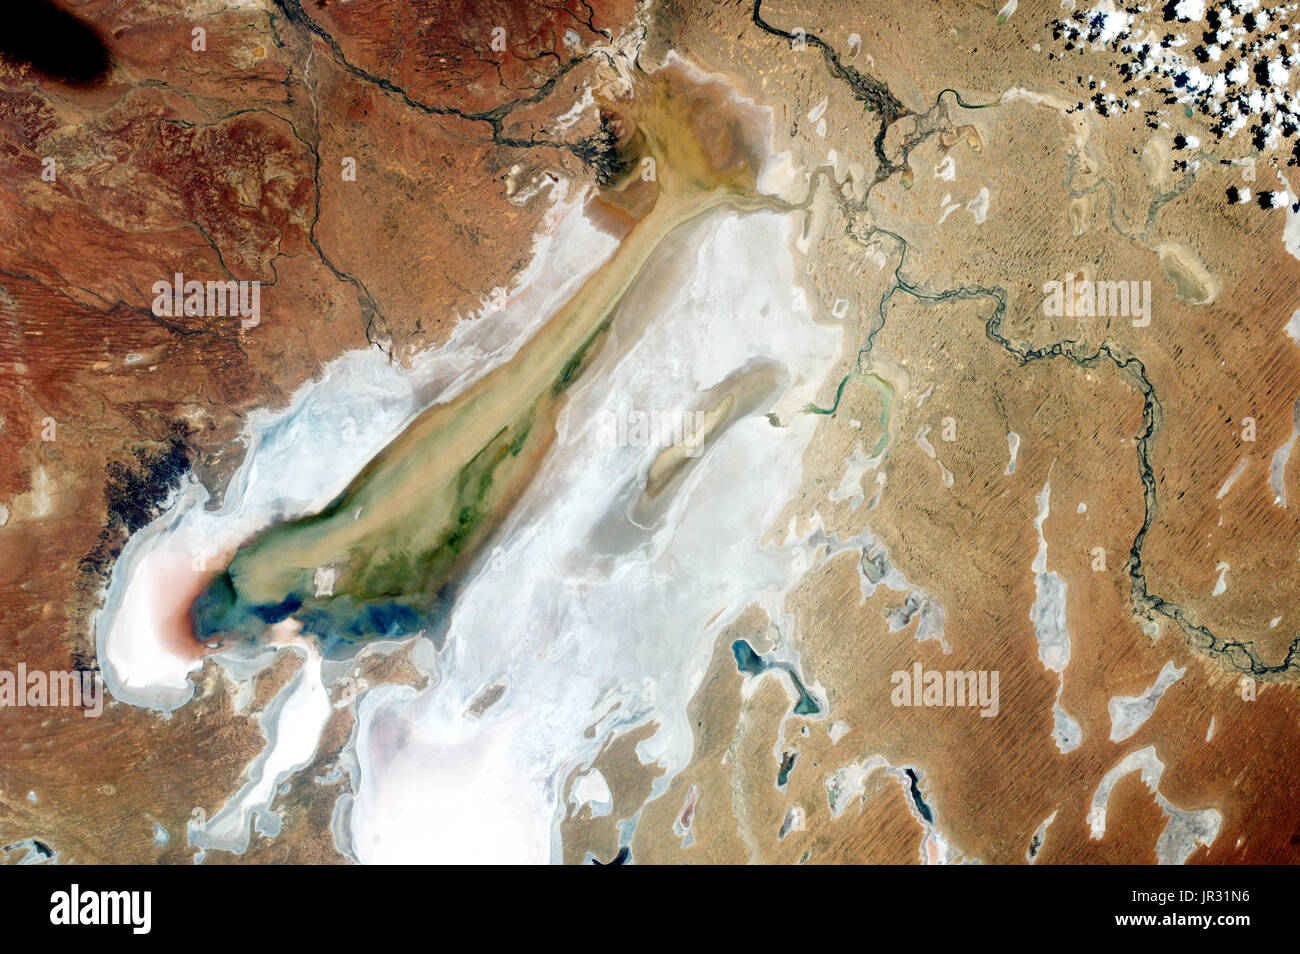 Lake Eyre, Australien, der EarthKAM-Kamera auf der internationalen Raumstation ISS am 14. Februar 2017 getroffenen. Lake Eyre ist in der Regel ein trockenes Salz Bett, aber heftigen Regenfällen Ende 2016 gefüllt-Flüsse, die durch die Wüste und in den See gewaschen. Stockfoto